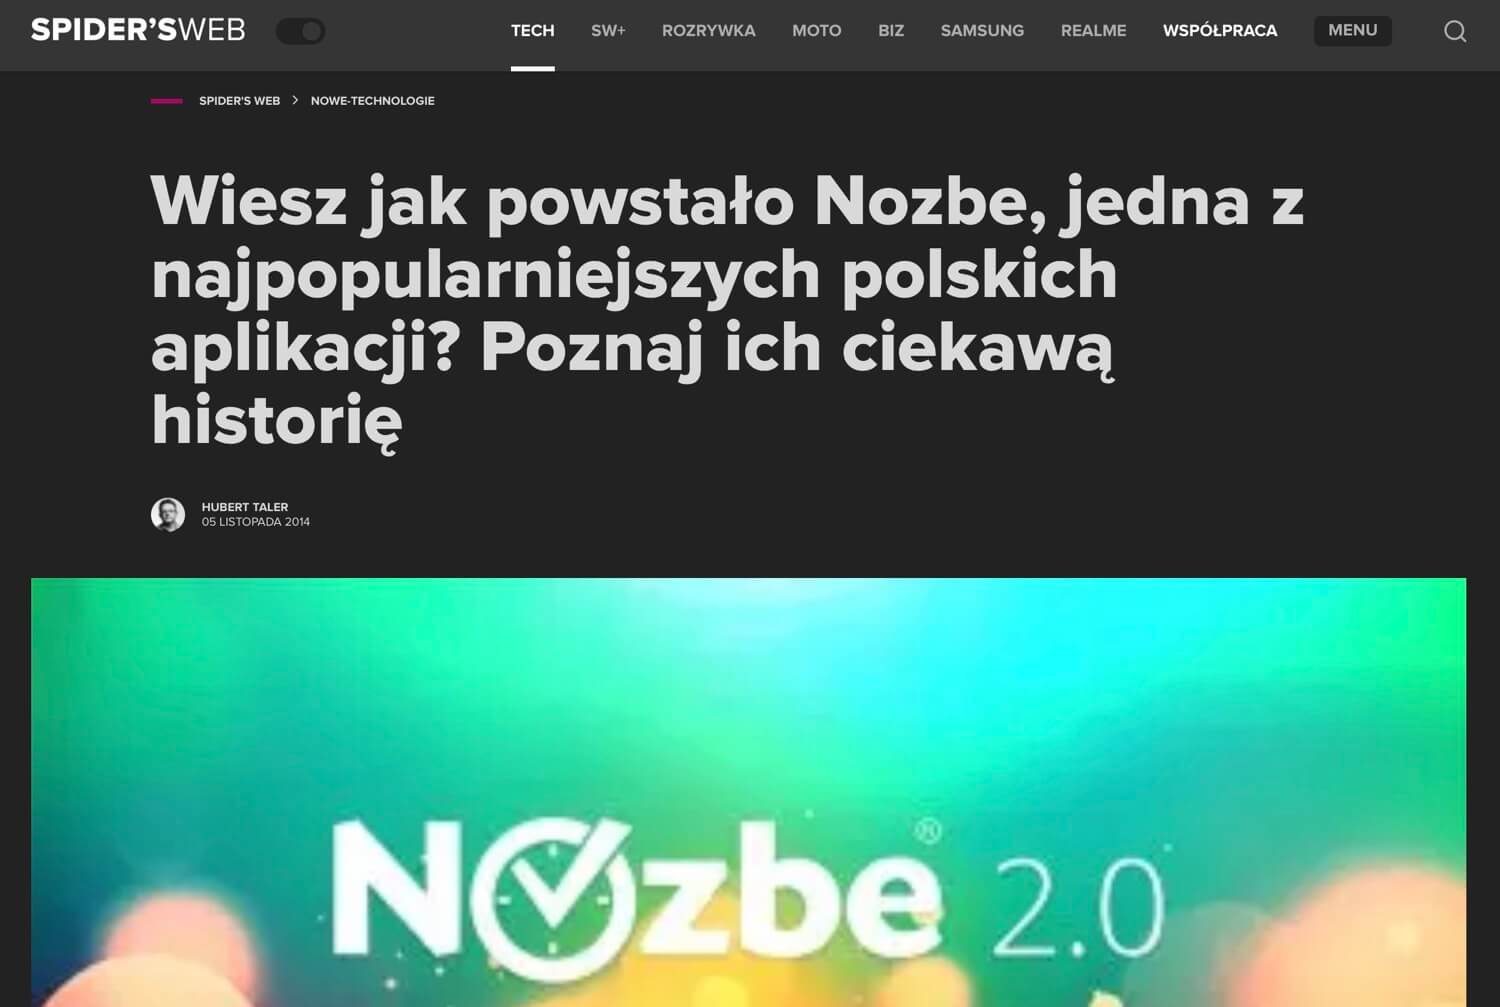 O Nozbe w Spider’s web: Wiesz jak powstało Nozbe, jedna z najpopularniejszych polskich aplikacji?